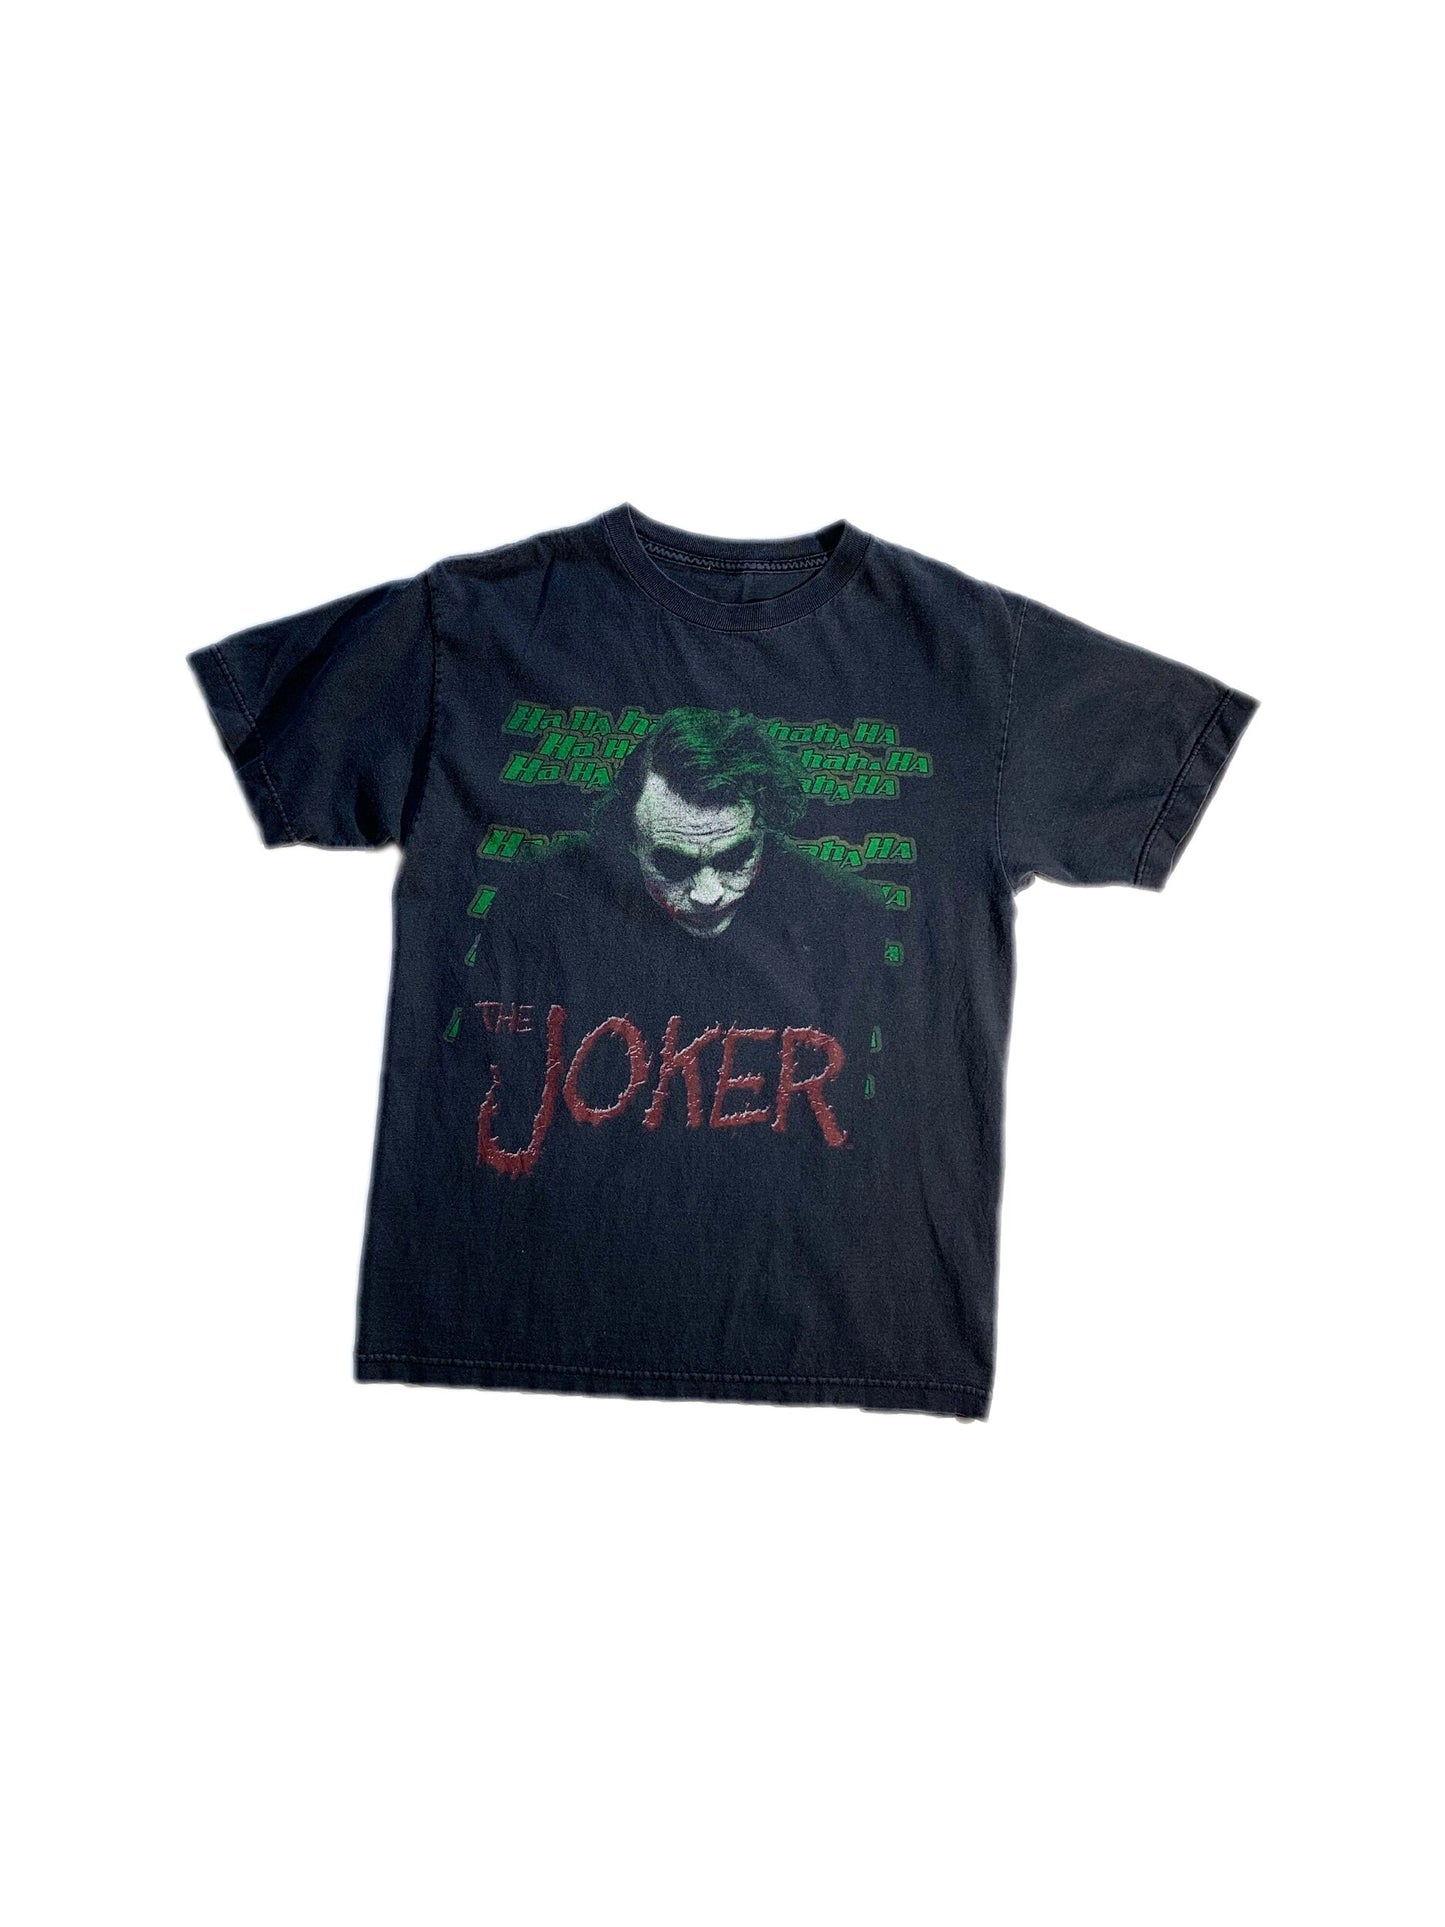 Vintage Dark Knight Joker T-Shirt